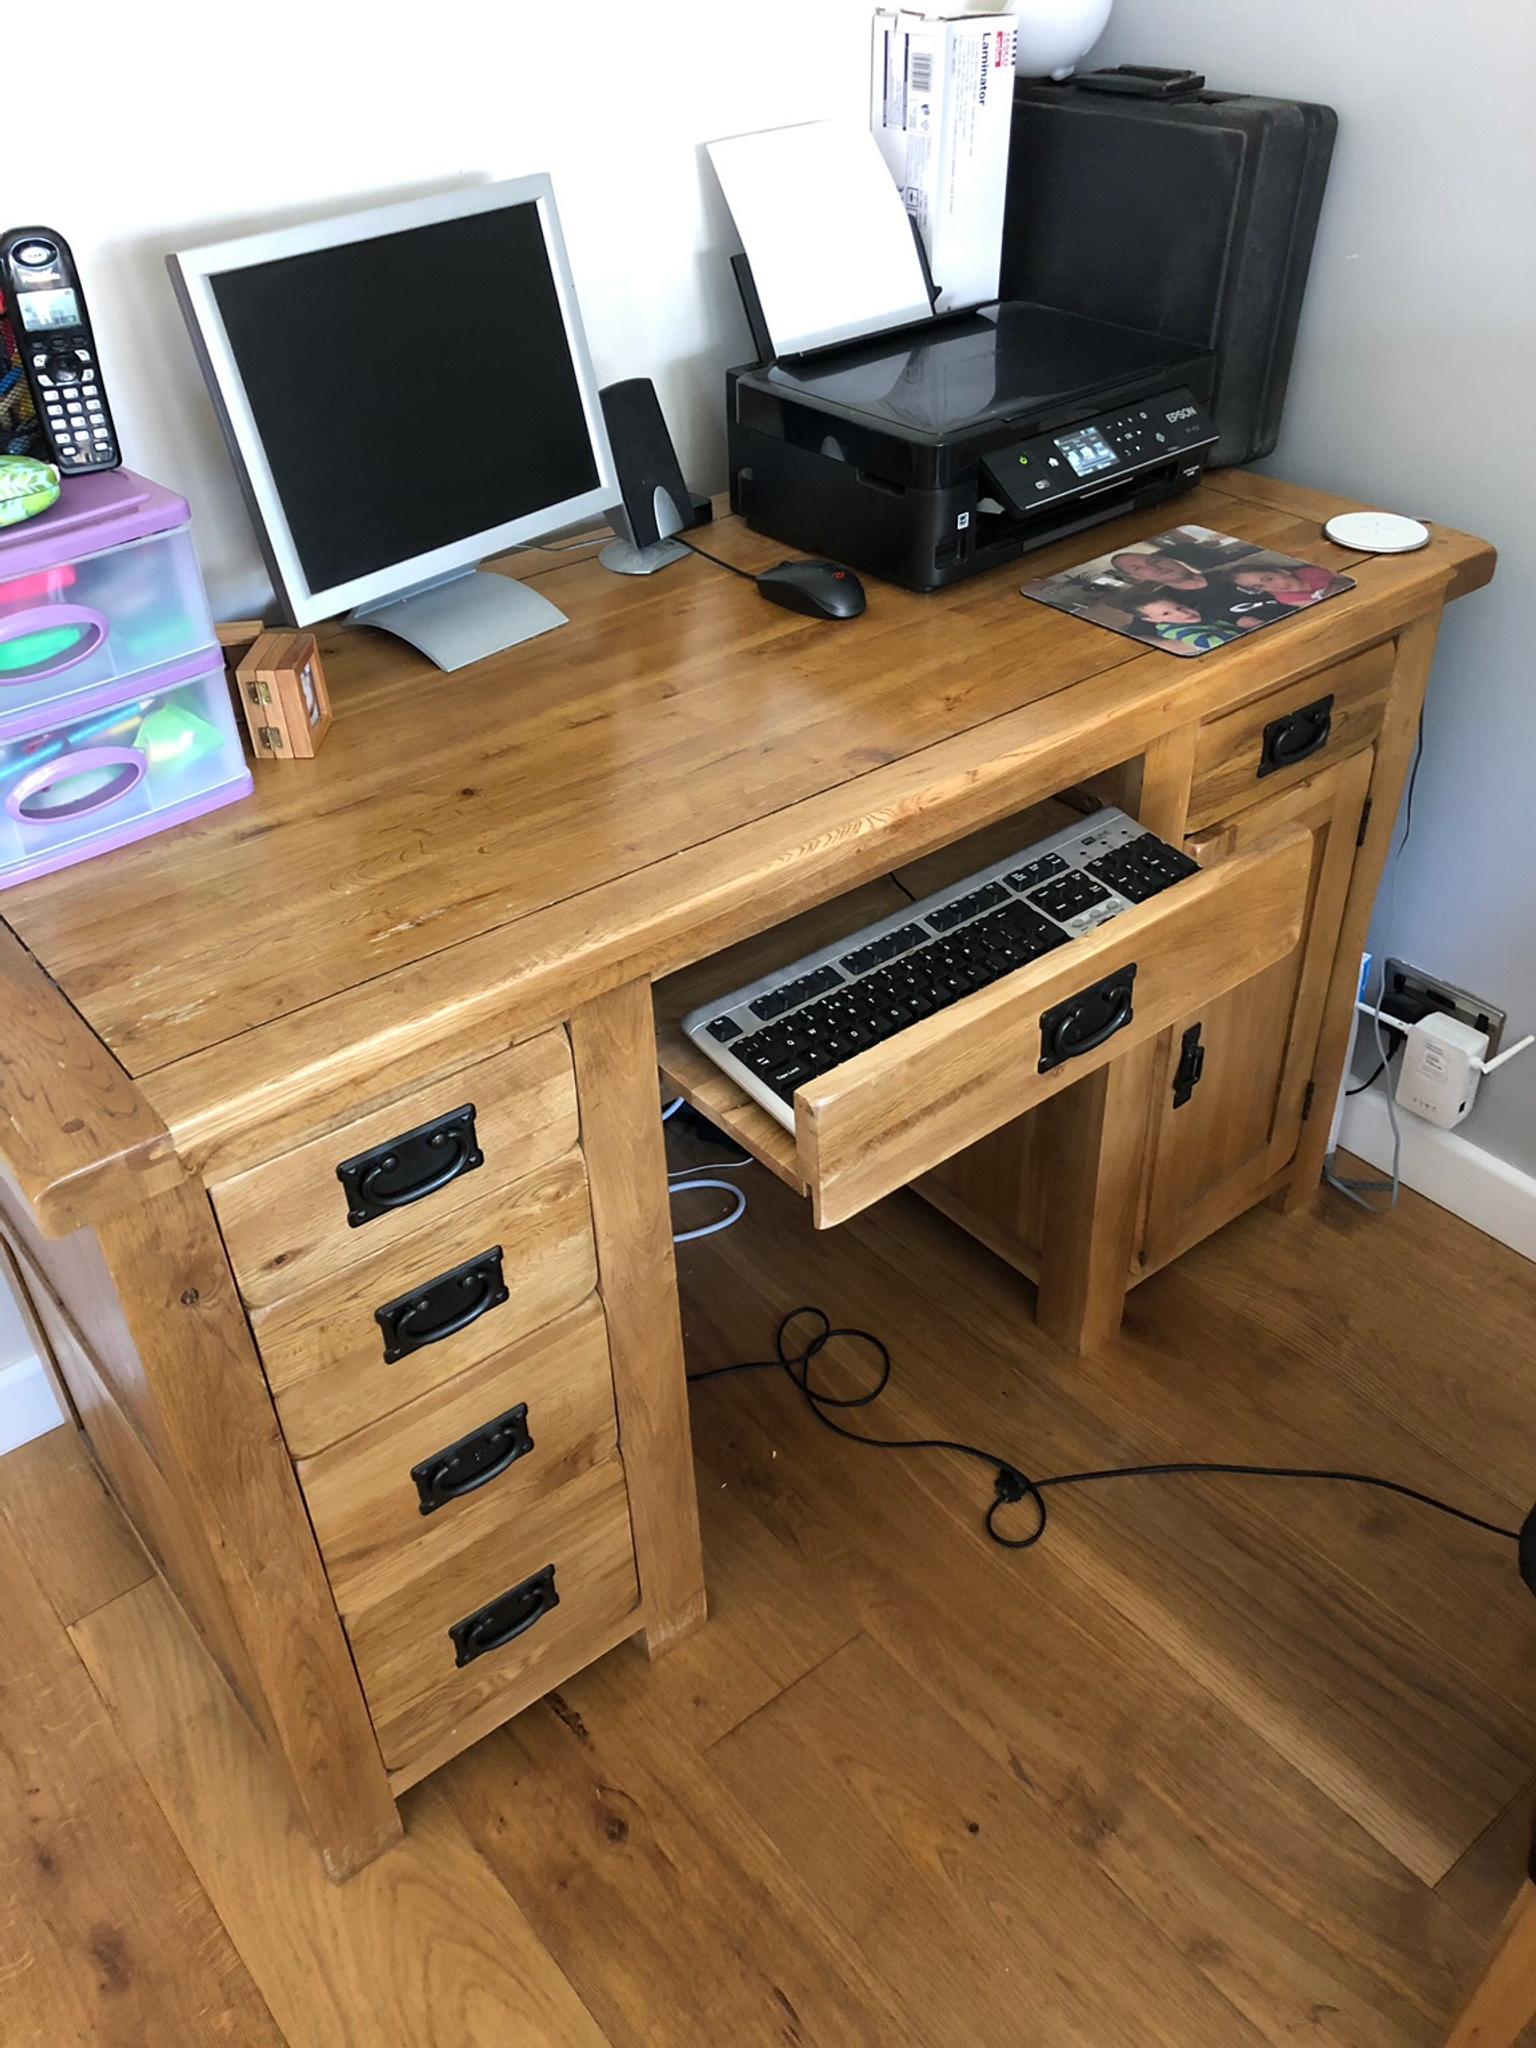 Solid Oak Computer Desk In Rh12 Horsham For 100 00 For Sale Shpock